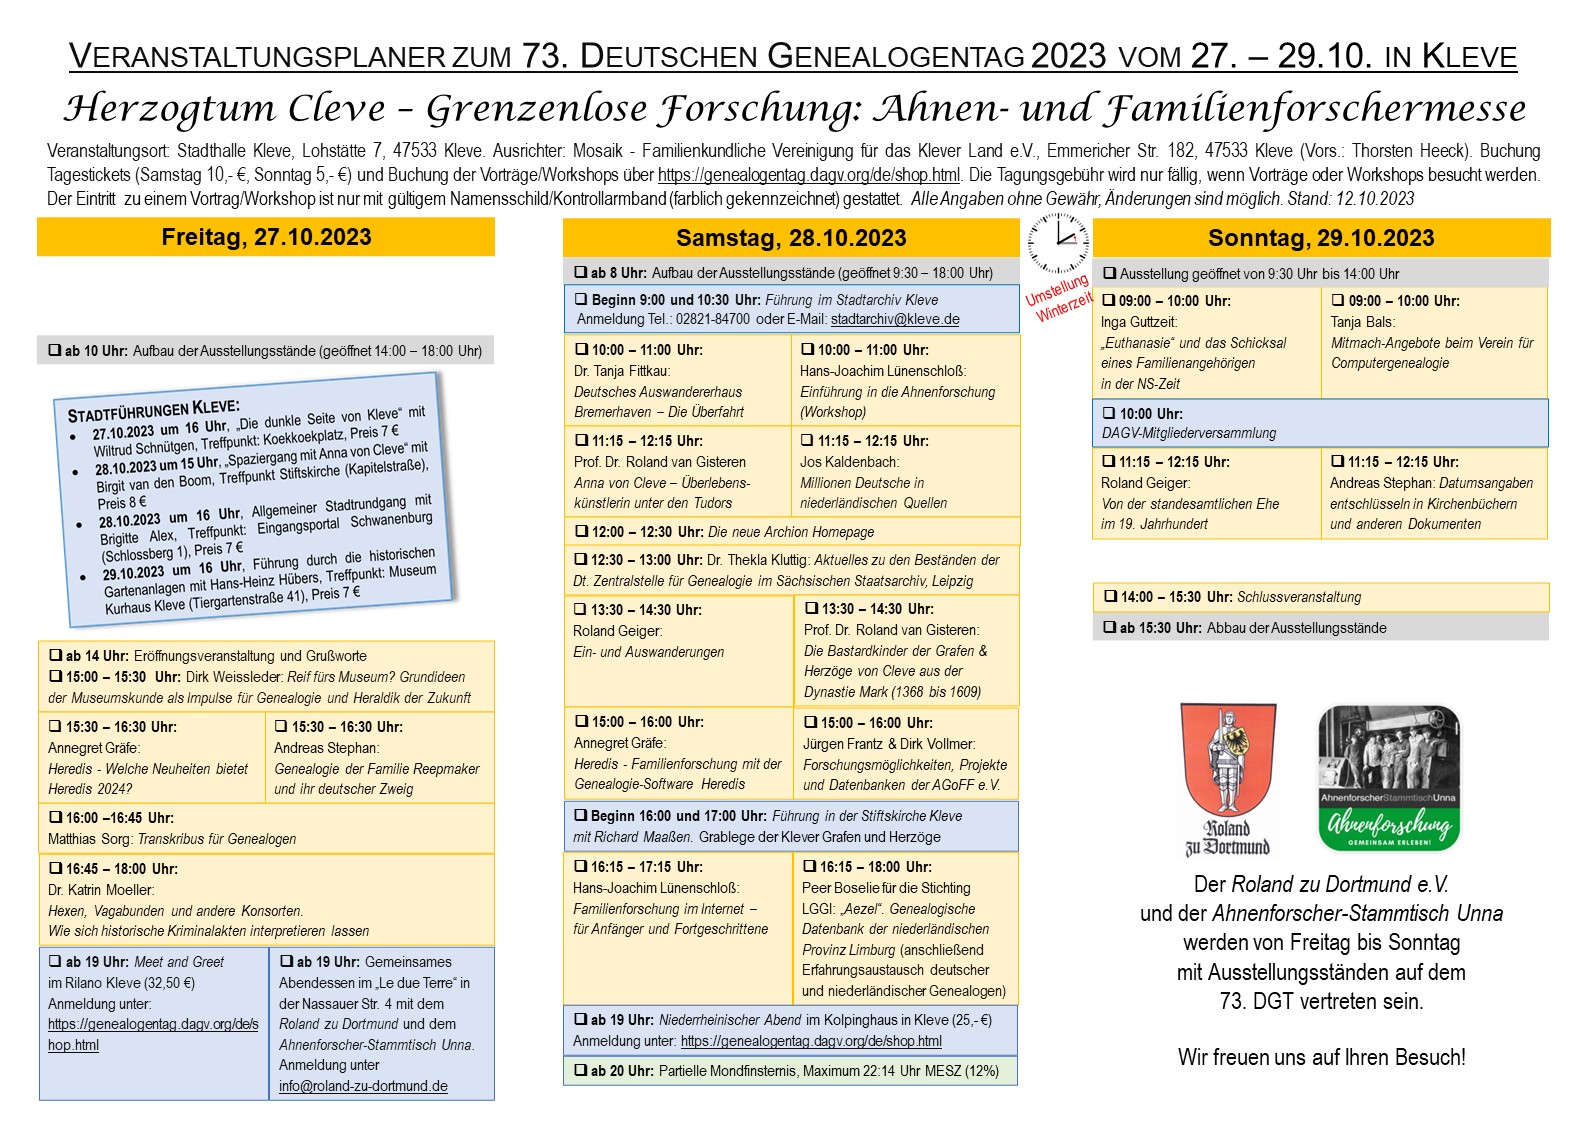 RzD (2023), Veranstaltungsplaner zum 73. Deutschen Genealogentag in Kleve